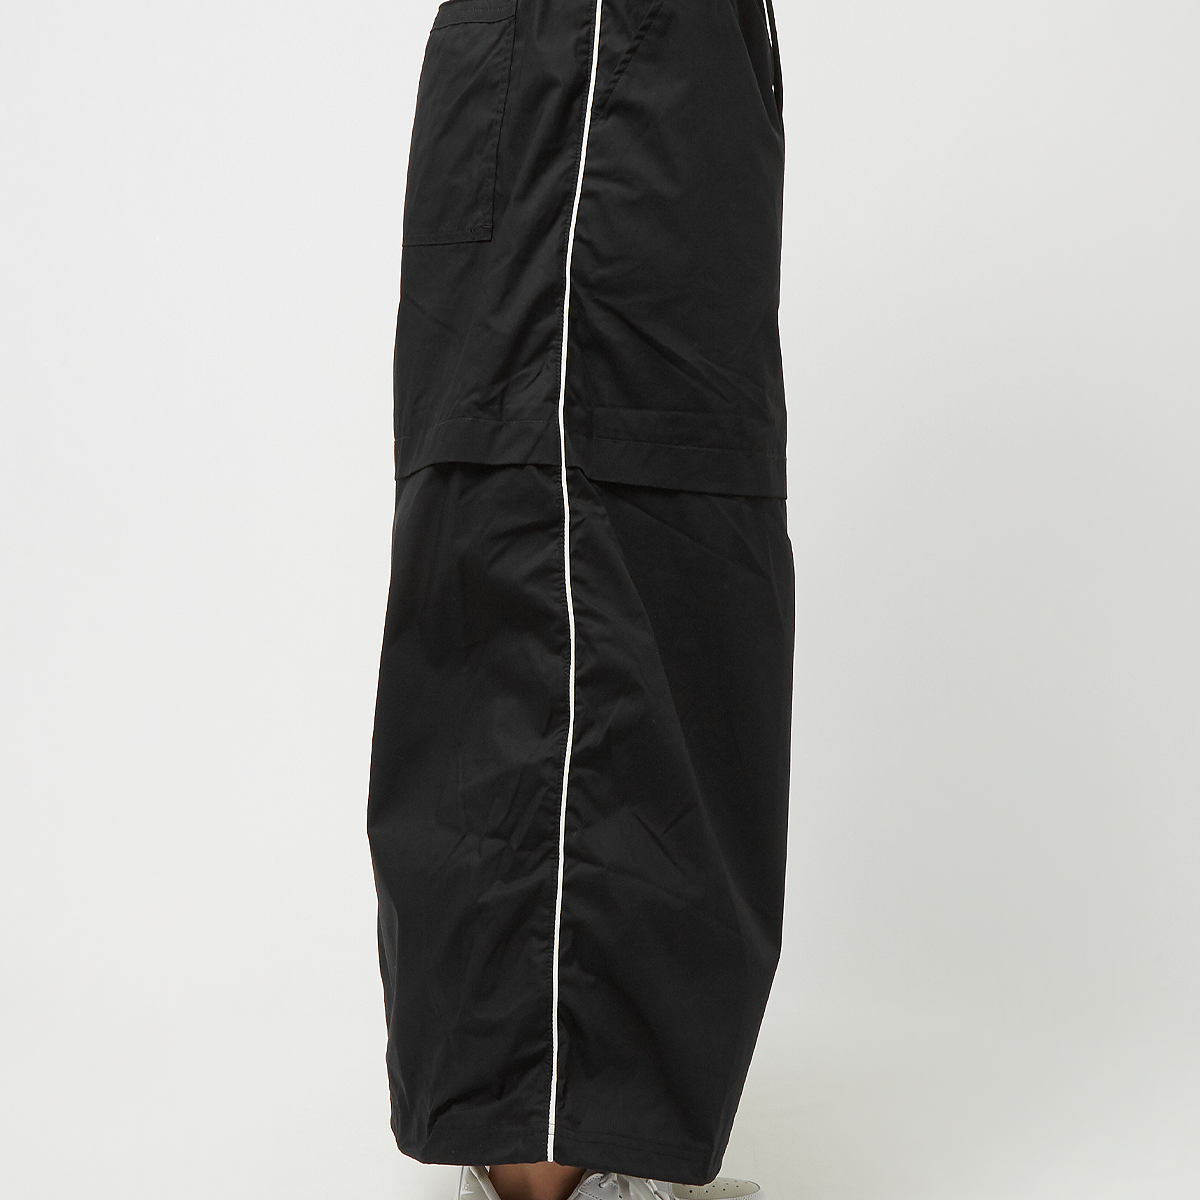 Nike Sportswear Woven Skirt Rokken Dames black white maat: XS beschikbare maaten:XS S